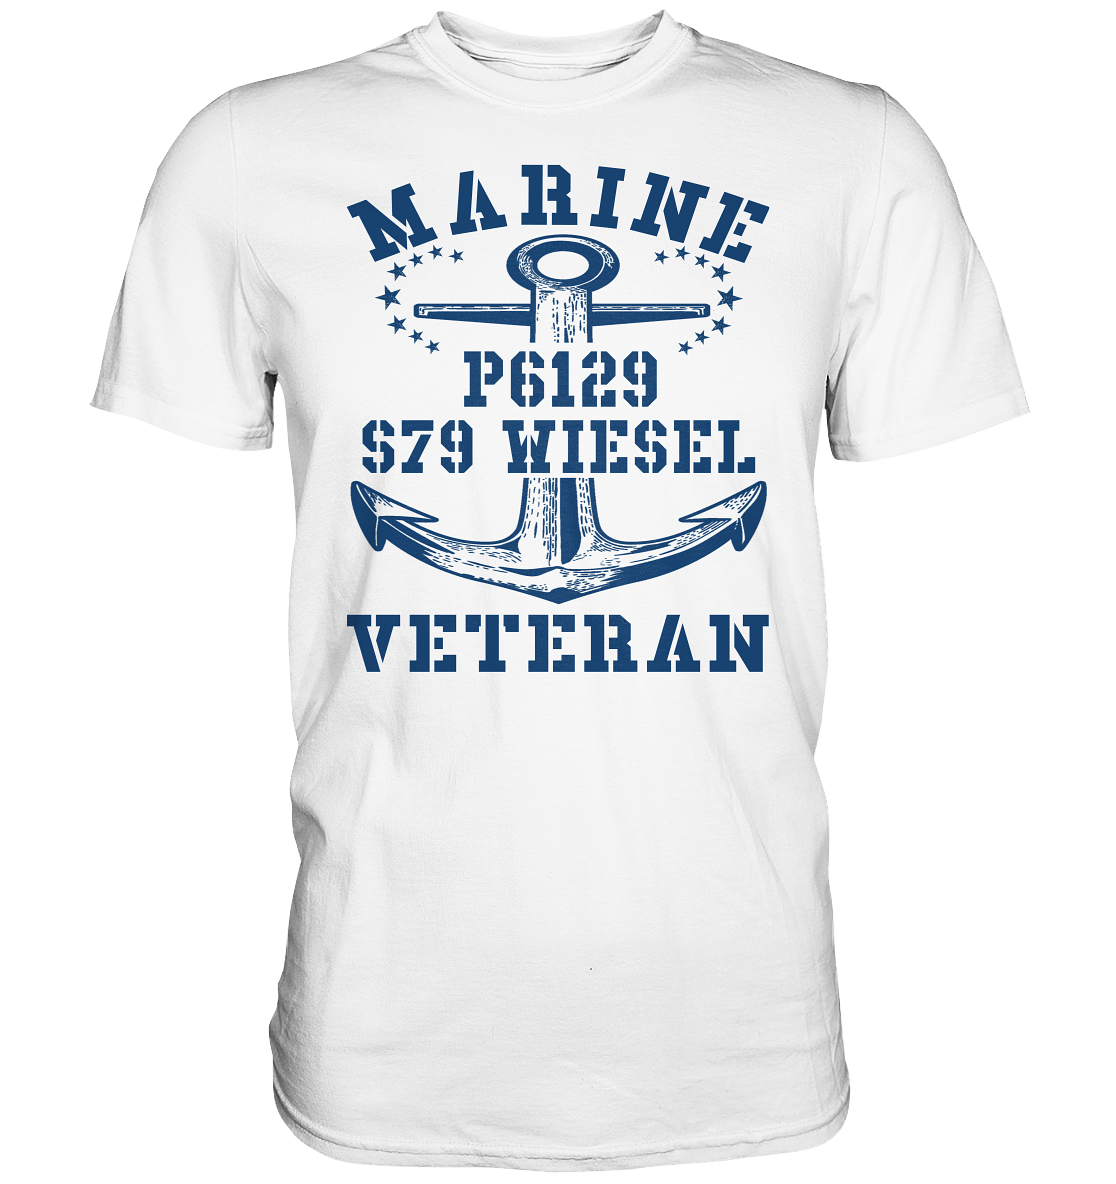 FK-Schnellboot P6129 WIESEL Marine Veteran - Premium Shirt